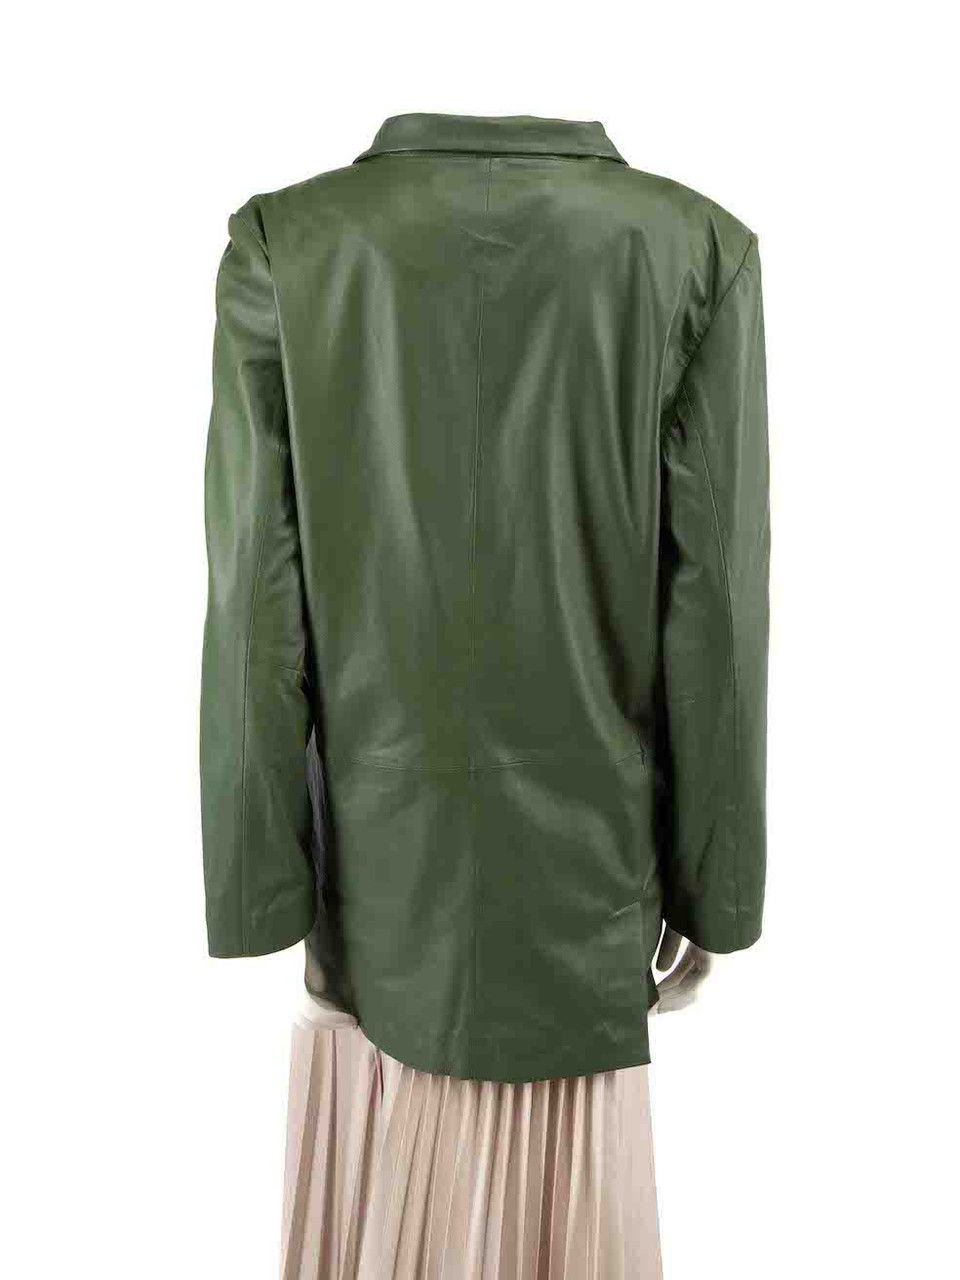 Munderingskompagniet Moss Green Leather Blazer